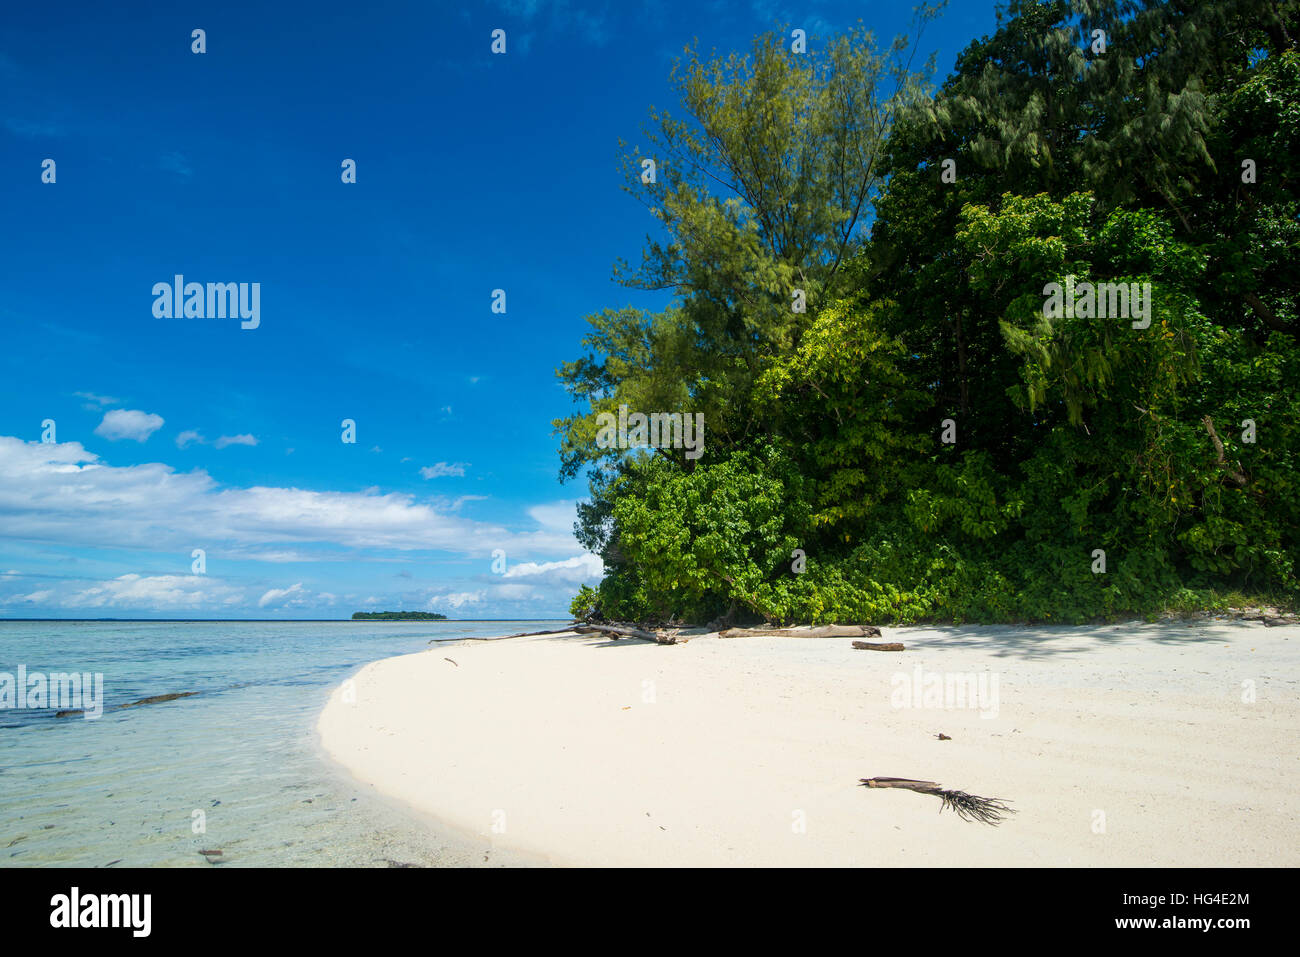 Acque turchesi e la spiaggia bianca sull'Isola di Natale, Buka, Bougainville, Papua Nuova Guinea, Pacific Foto Stock